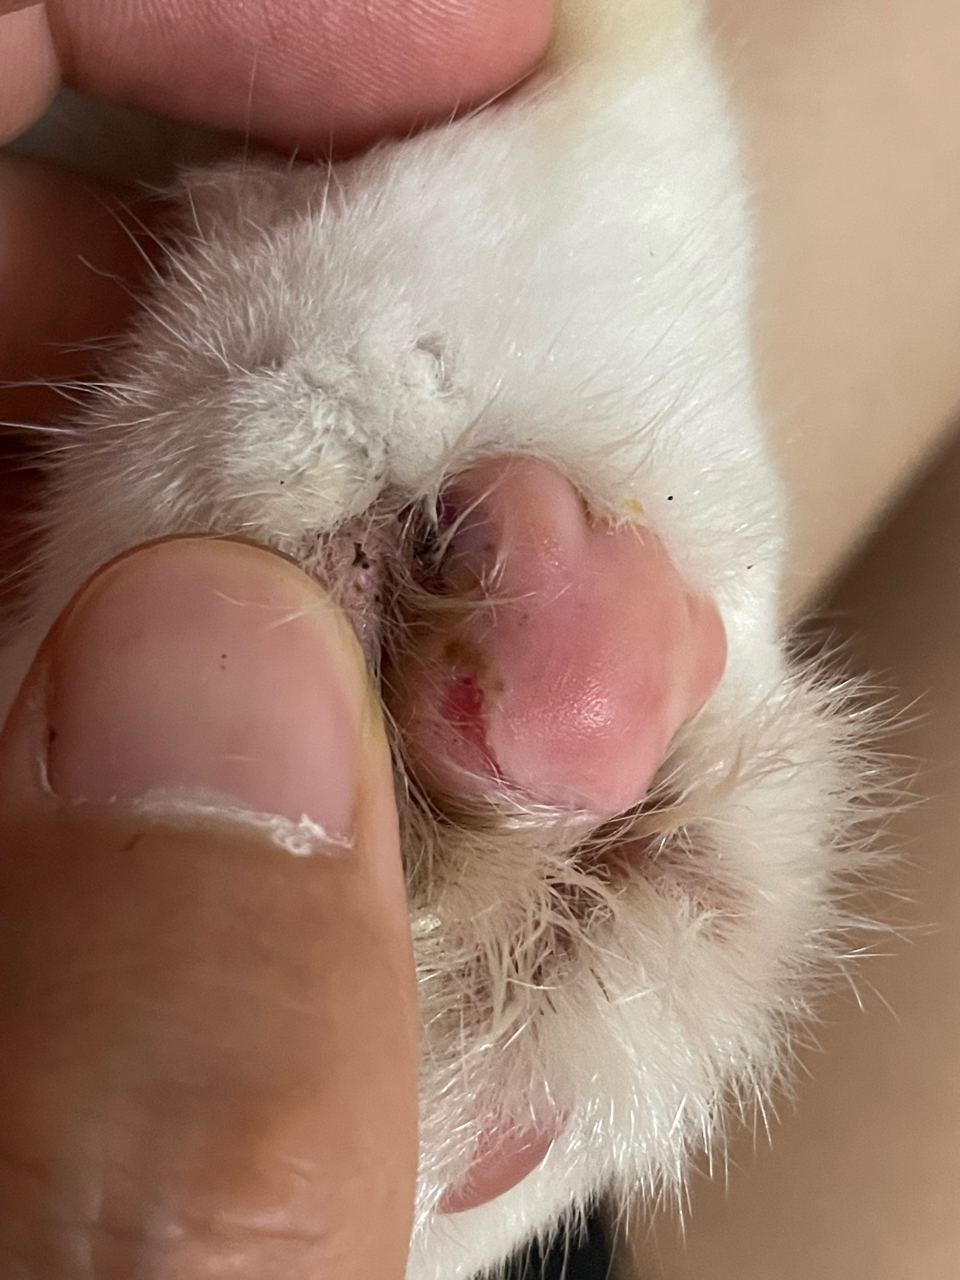 猫的爪子肉垫常见病图片